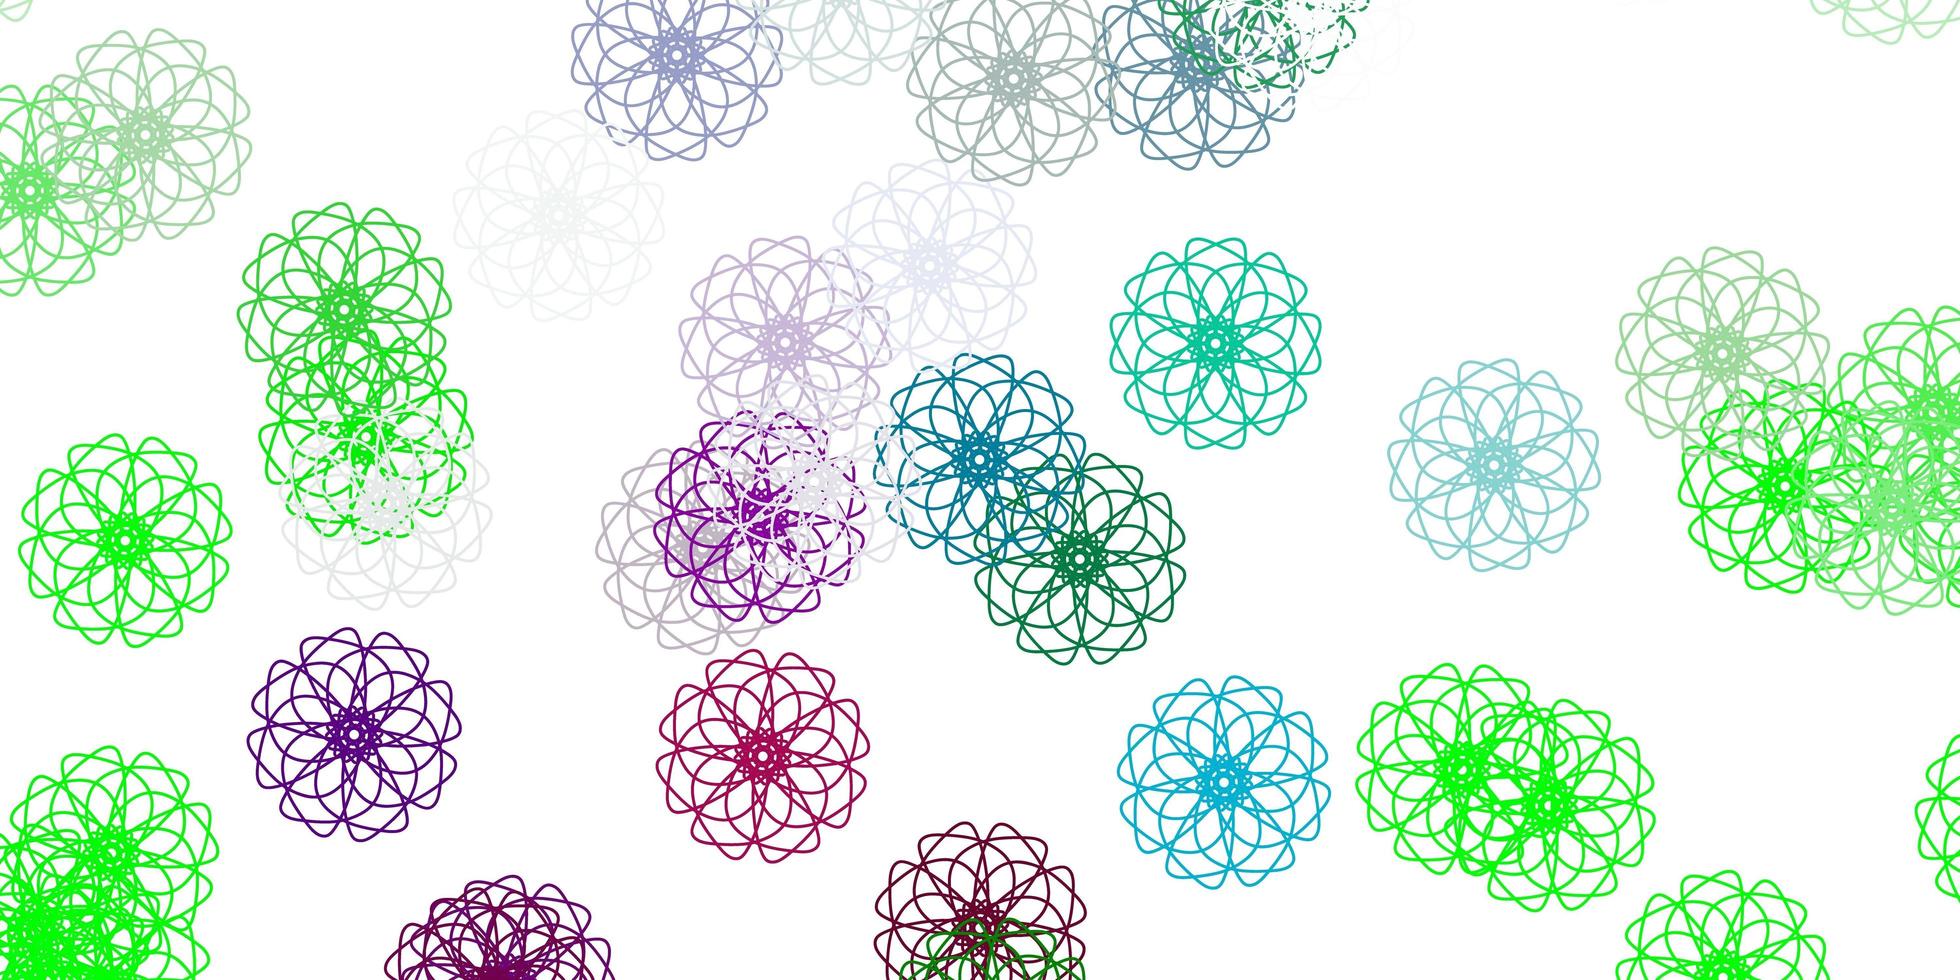 motif de doodle vecteur rose clair, vert avec des fleurs.